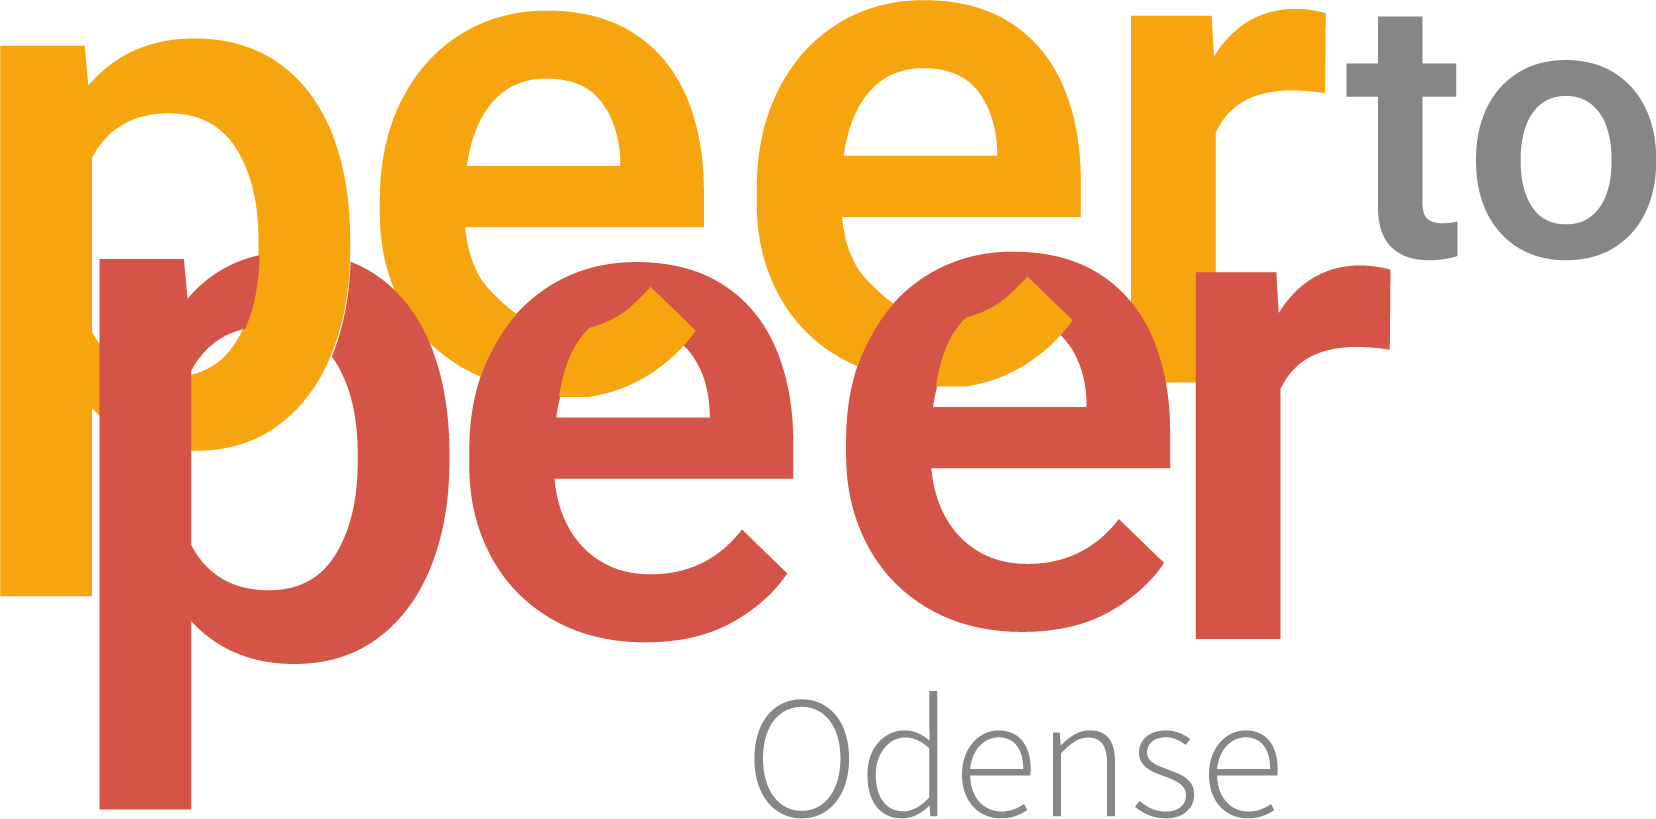 Peer to peer Odense